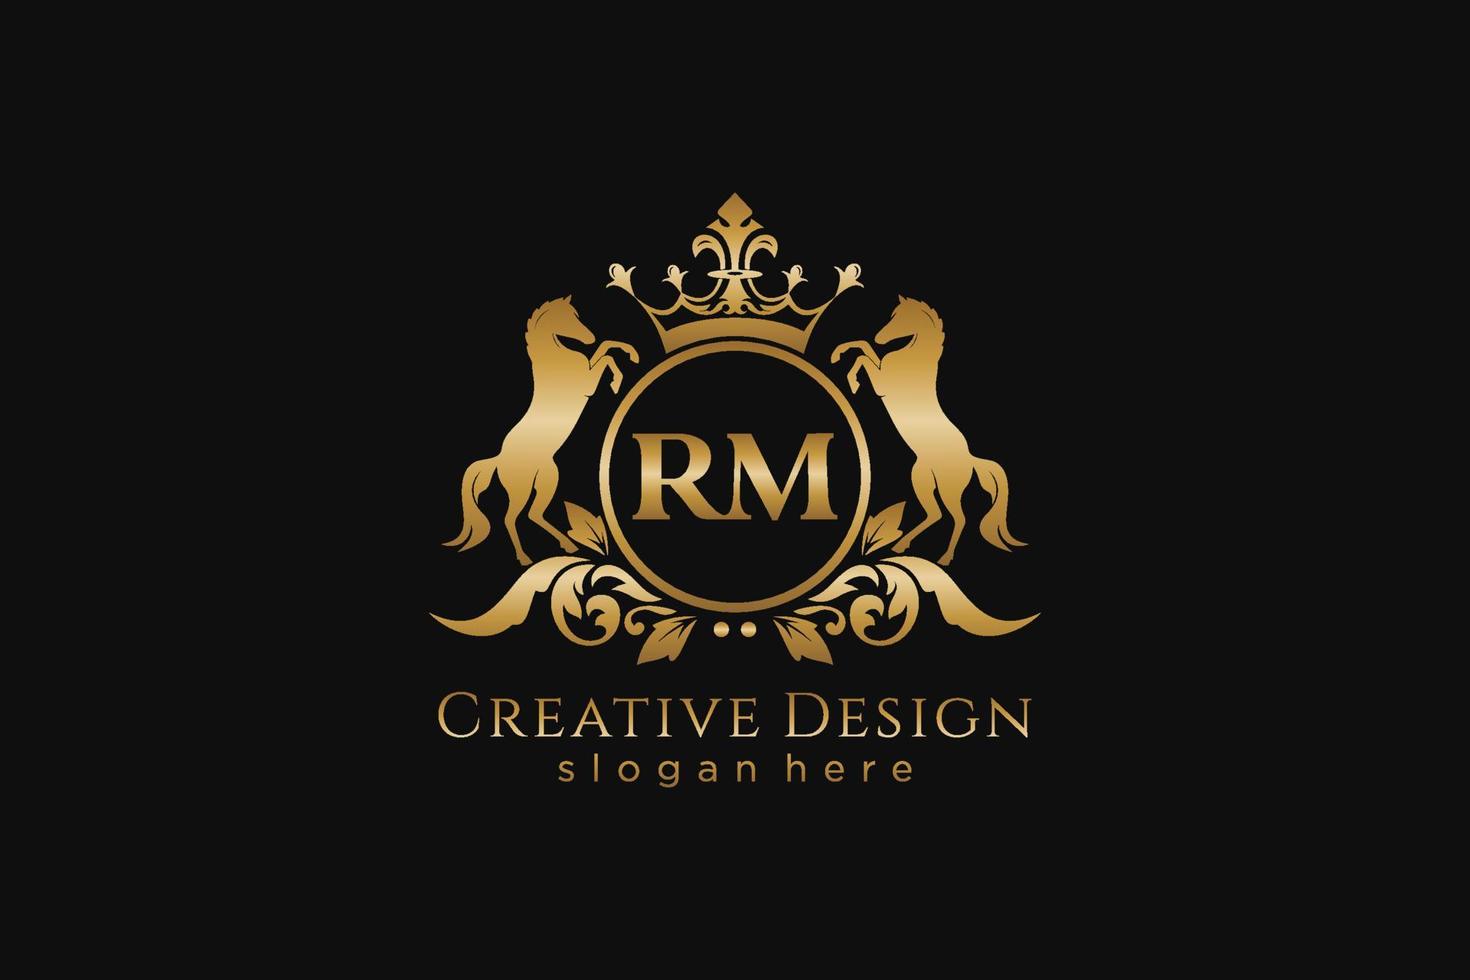 cresta dorada retro rm inicial con círculo y dos caballos, plantilla de insignia con pergaminos y corona real - perfecto para proyectos de marca de lujo vector